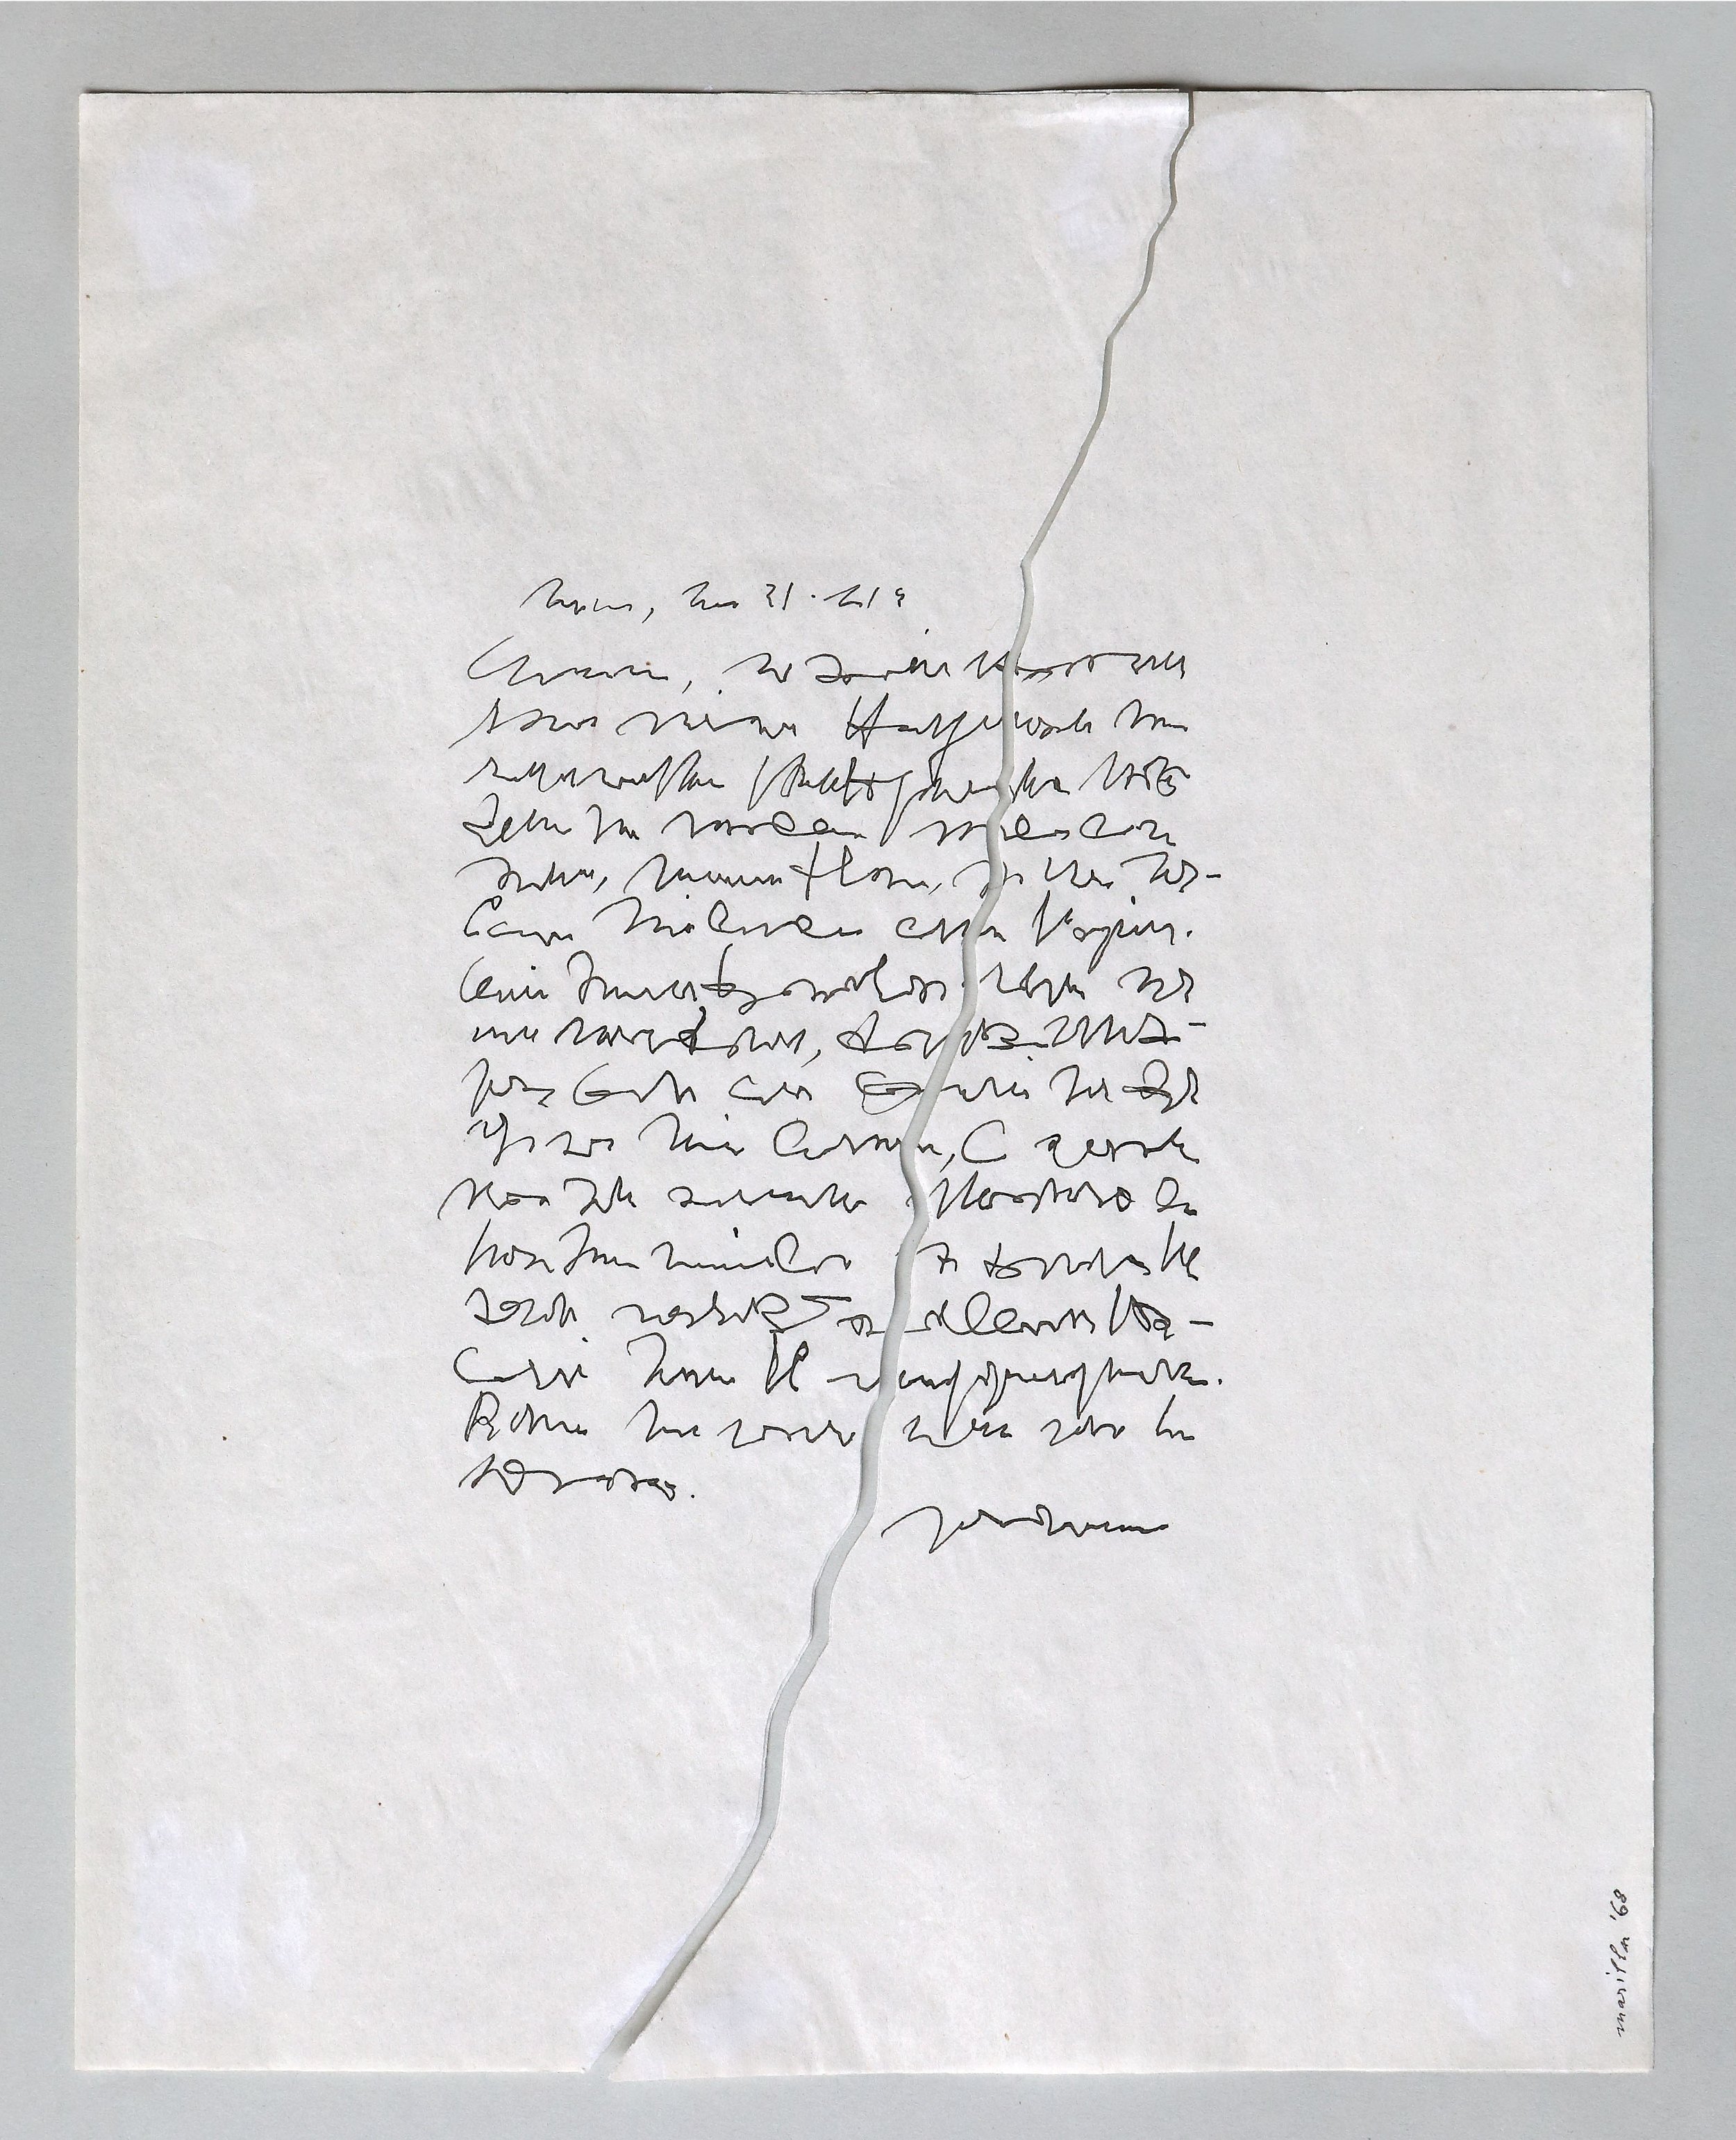 Cracked letter, 1968